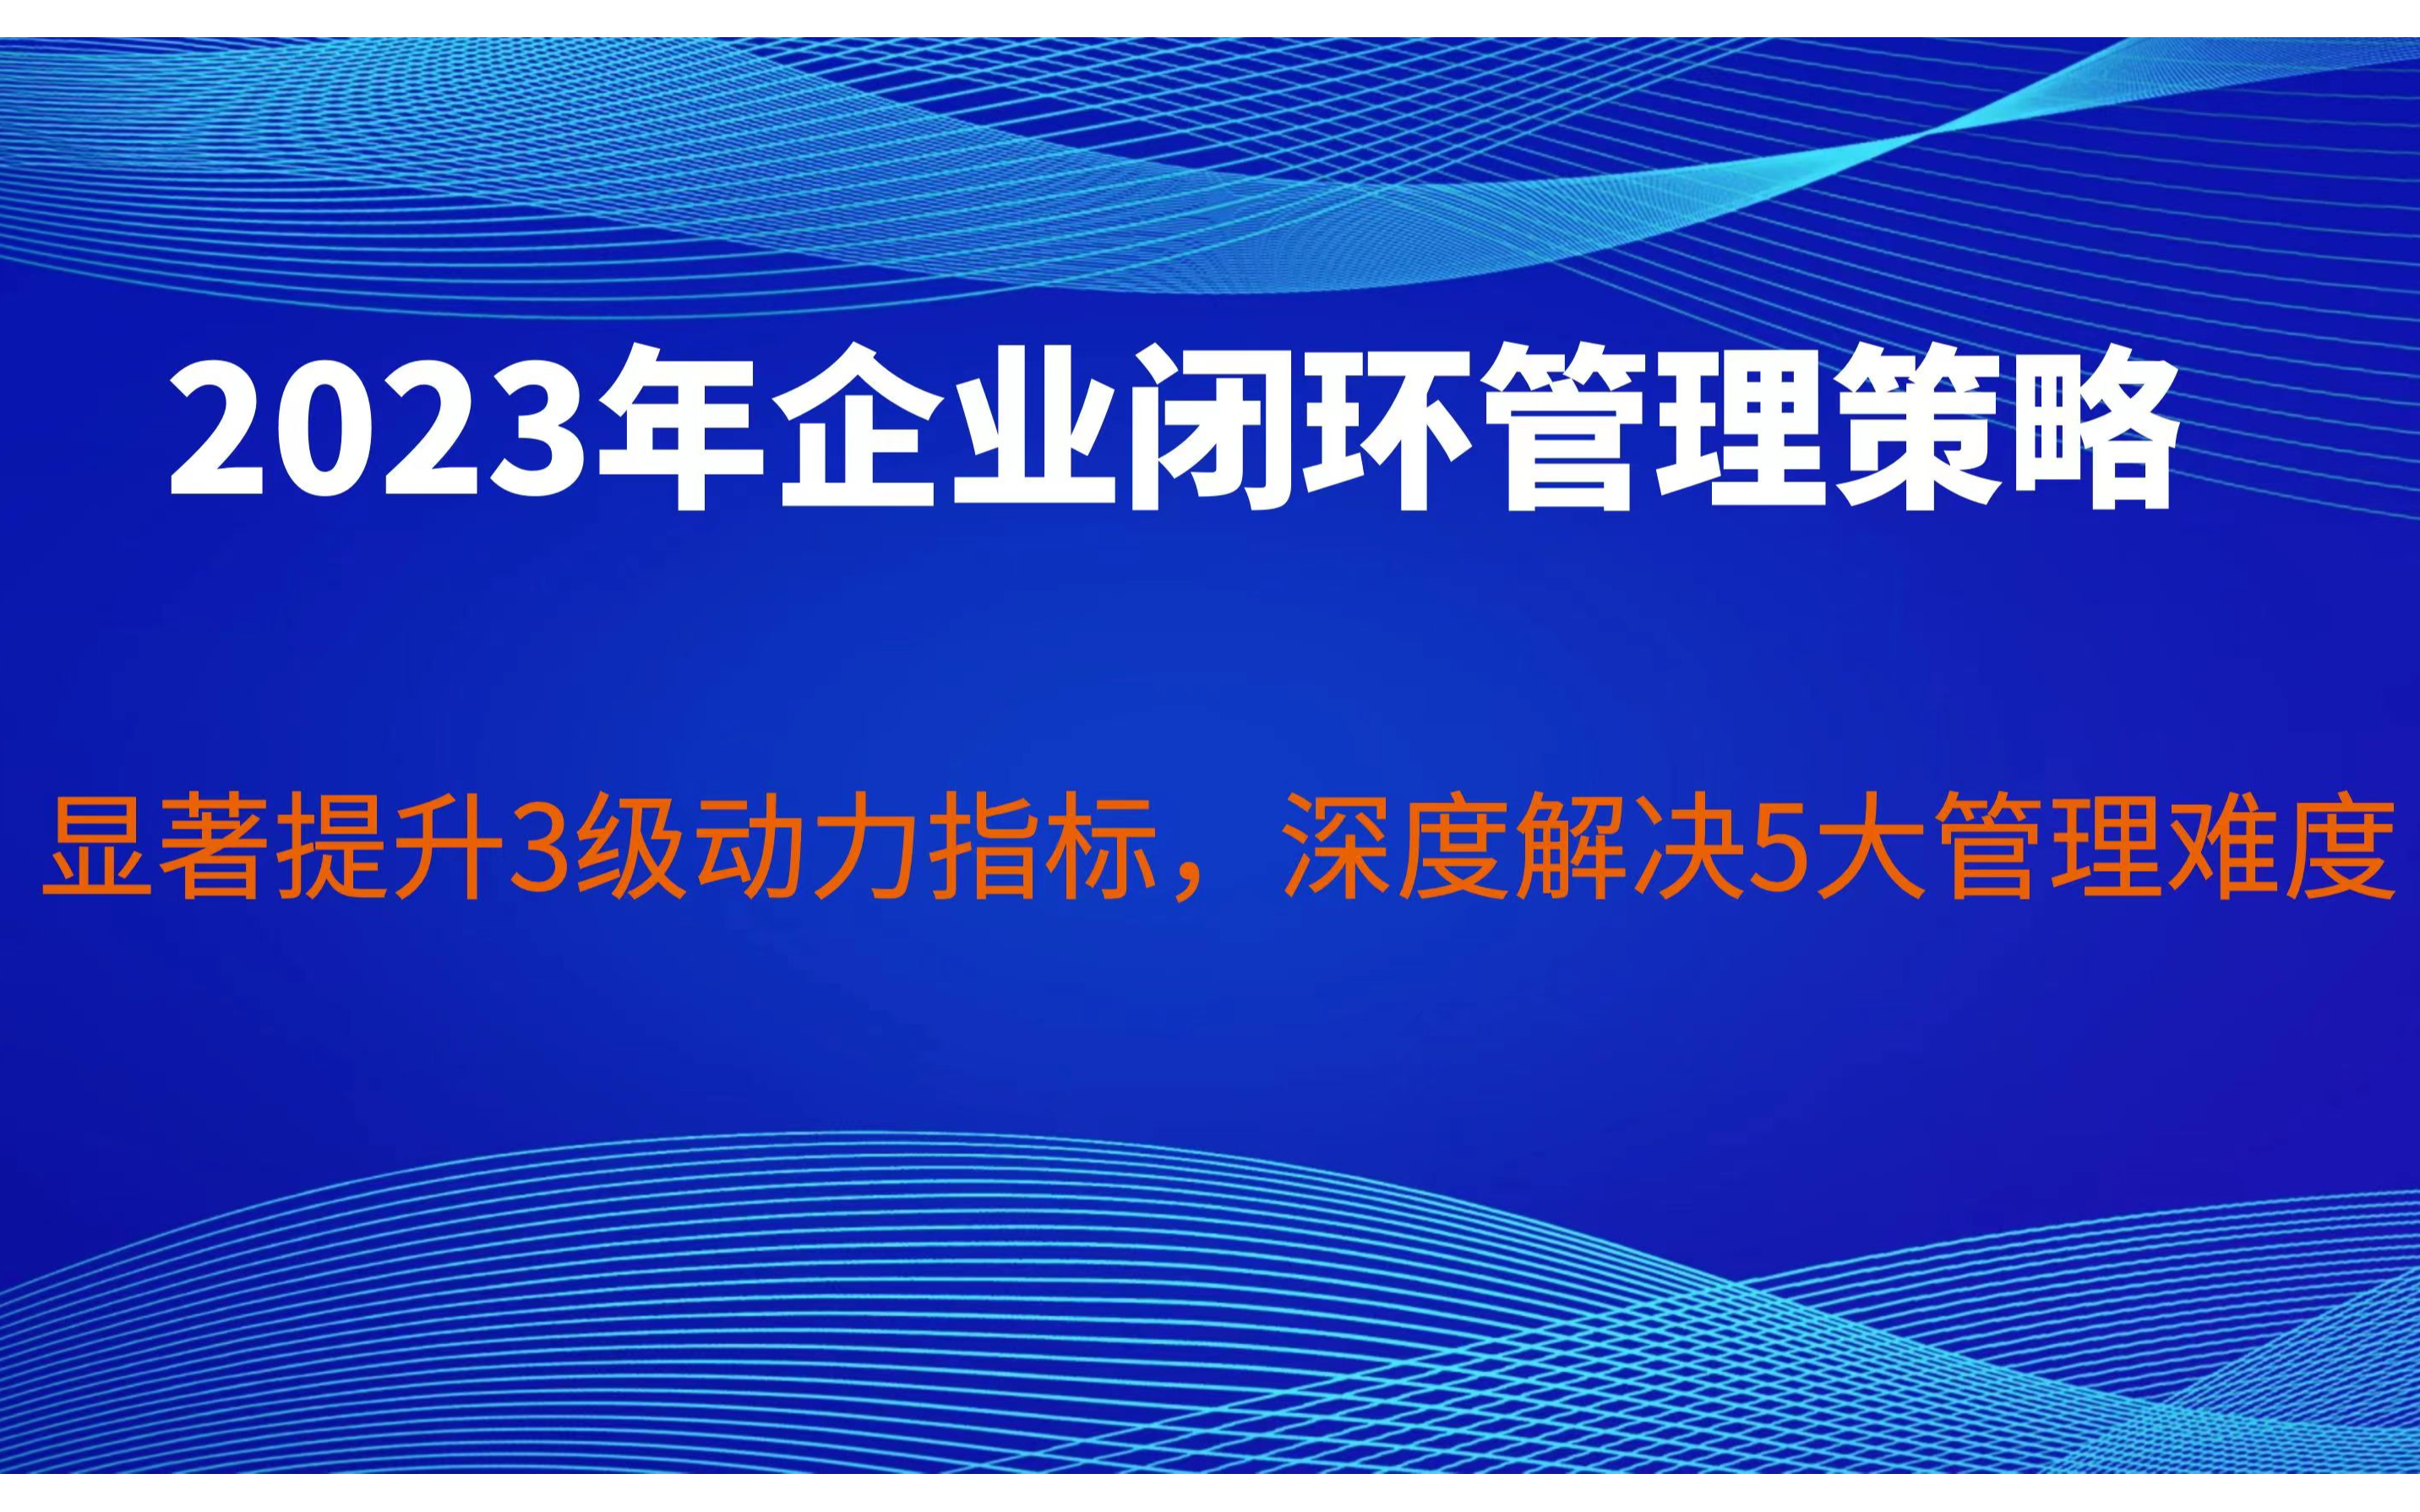 企业2023年闭环管理策略－欧图欧商学院杭州公益课程2.16下午